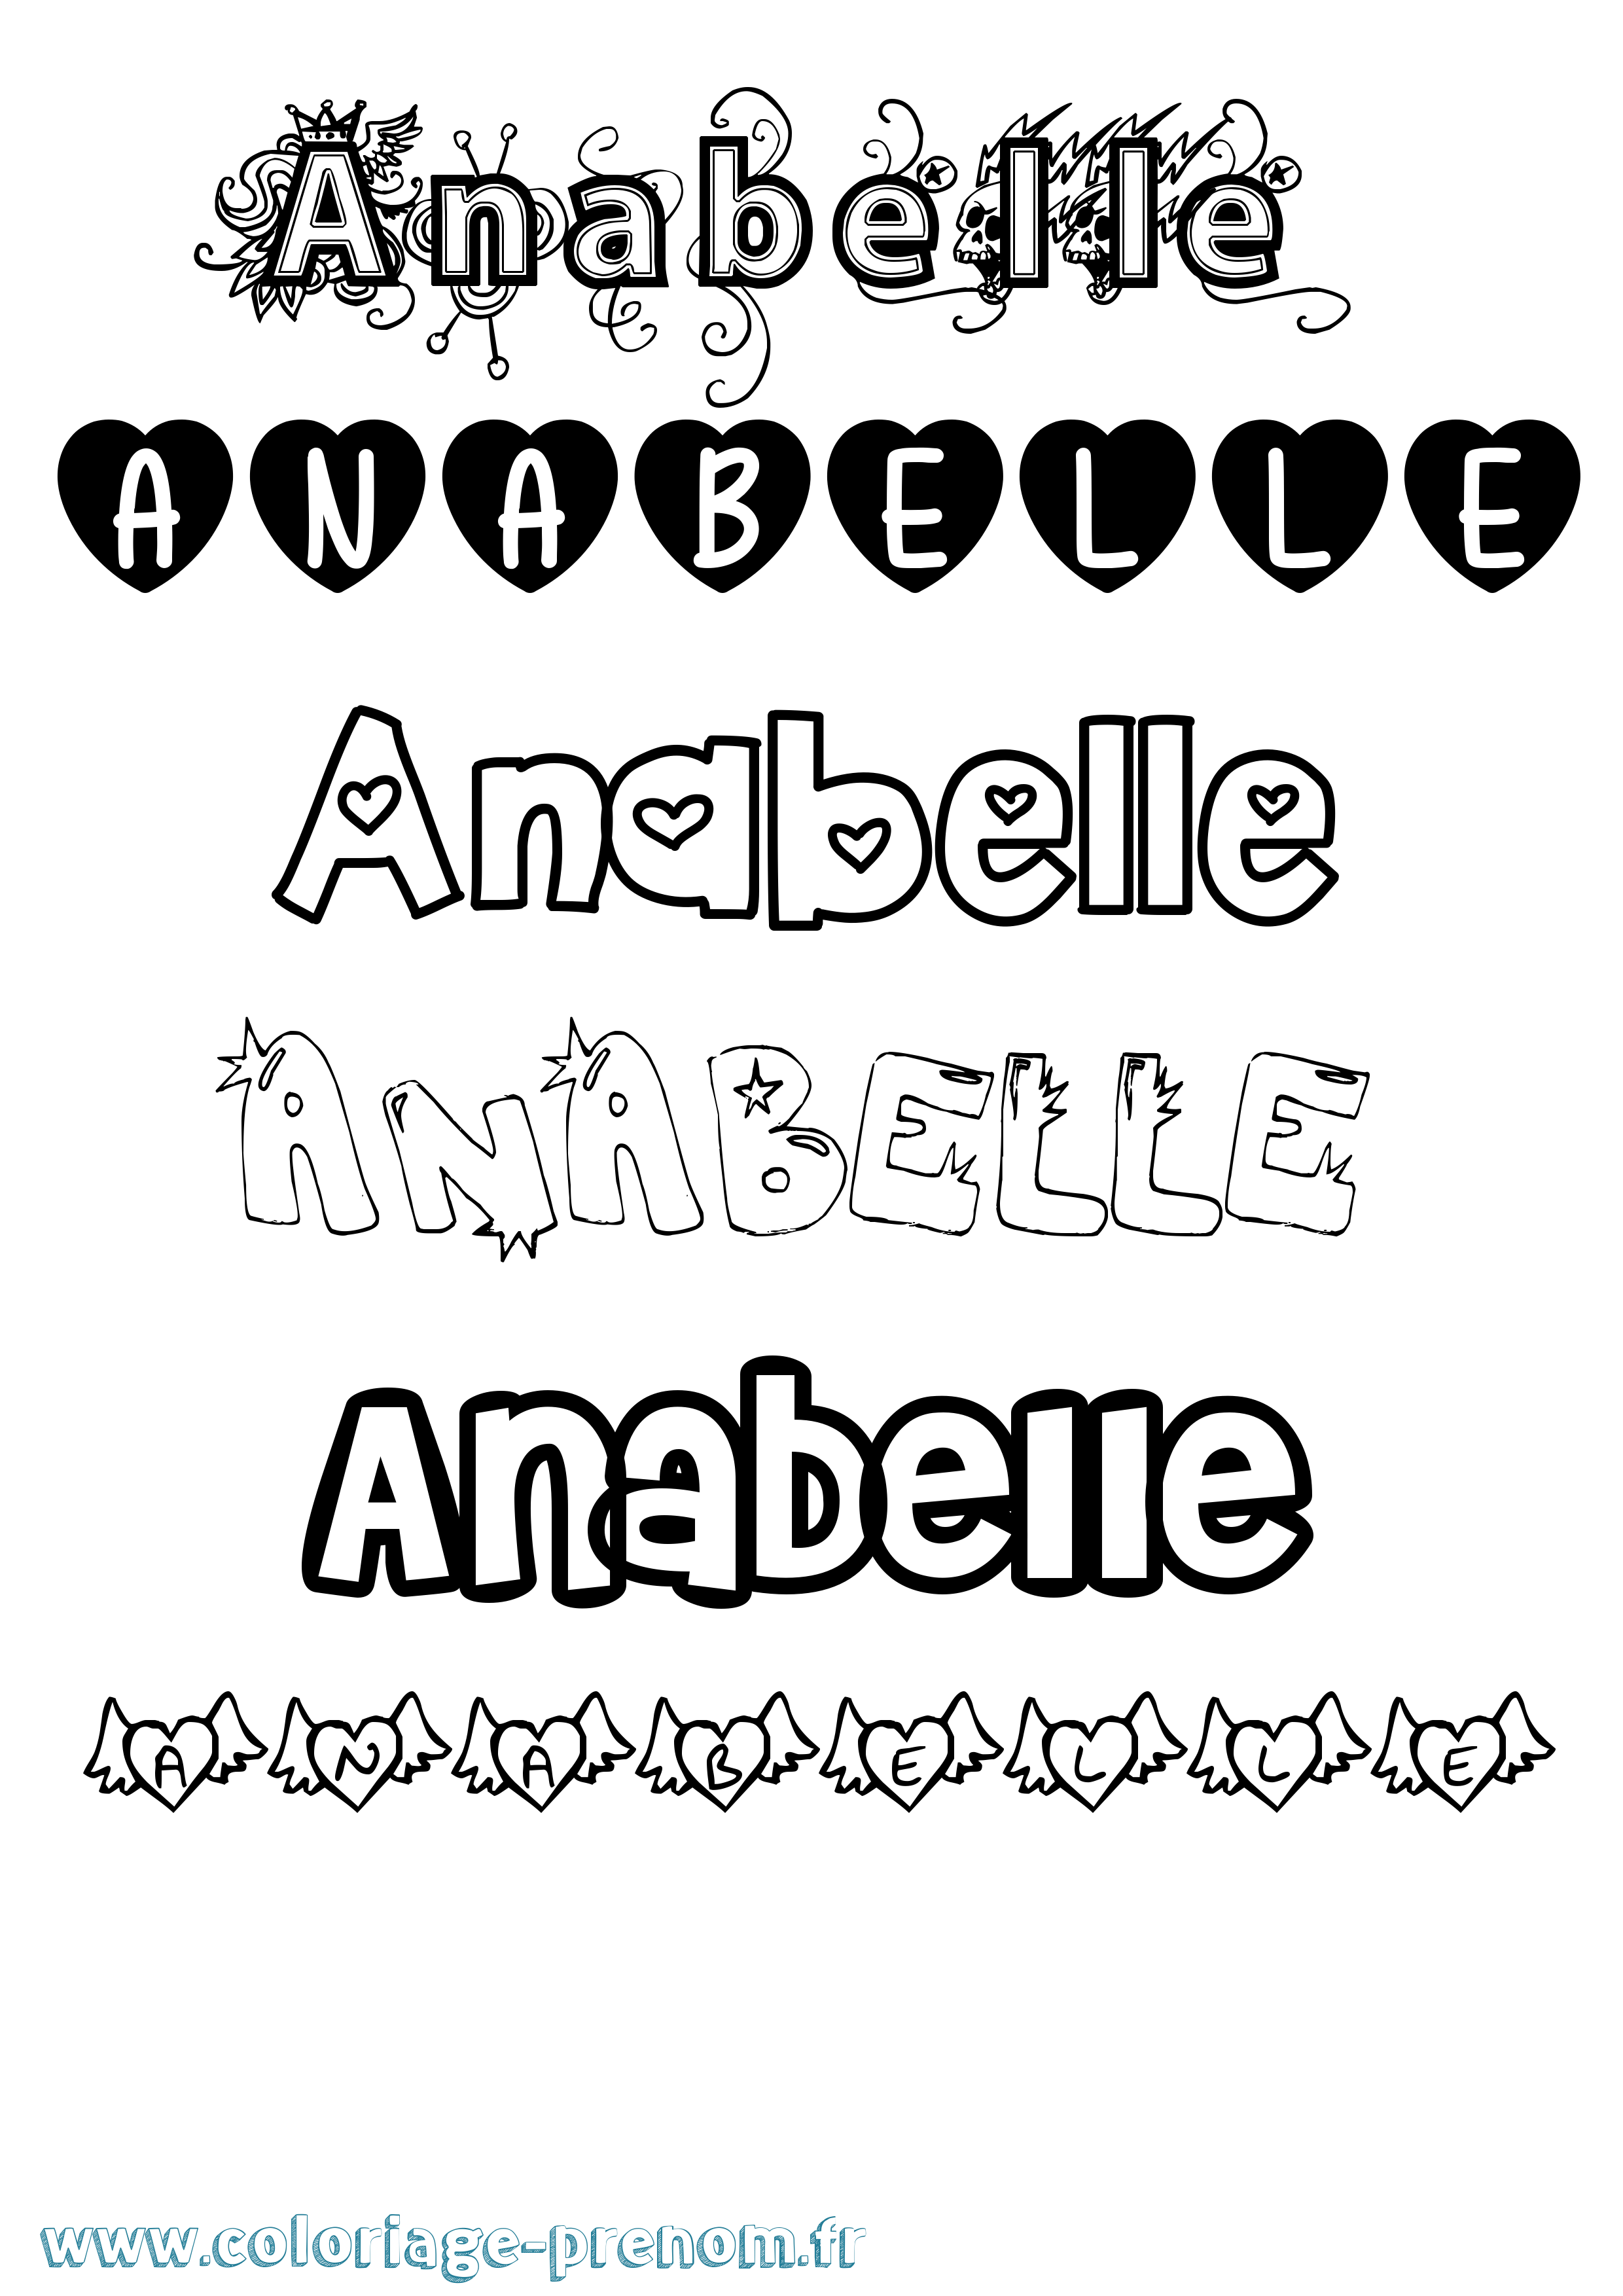 Coloriage prénom Anabelle